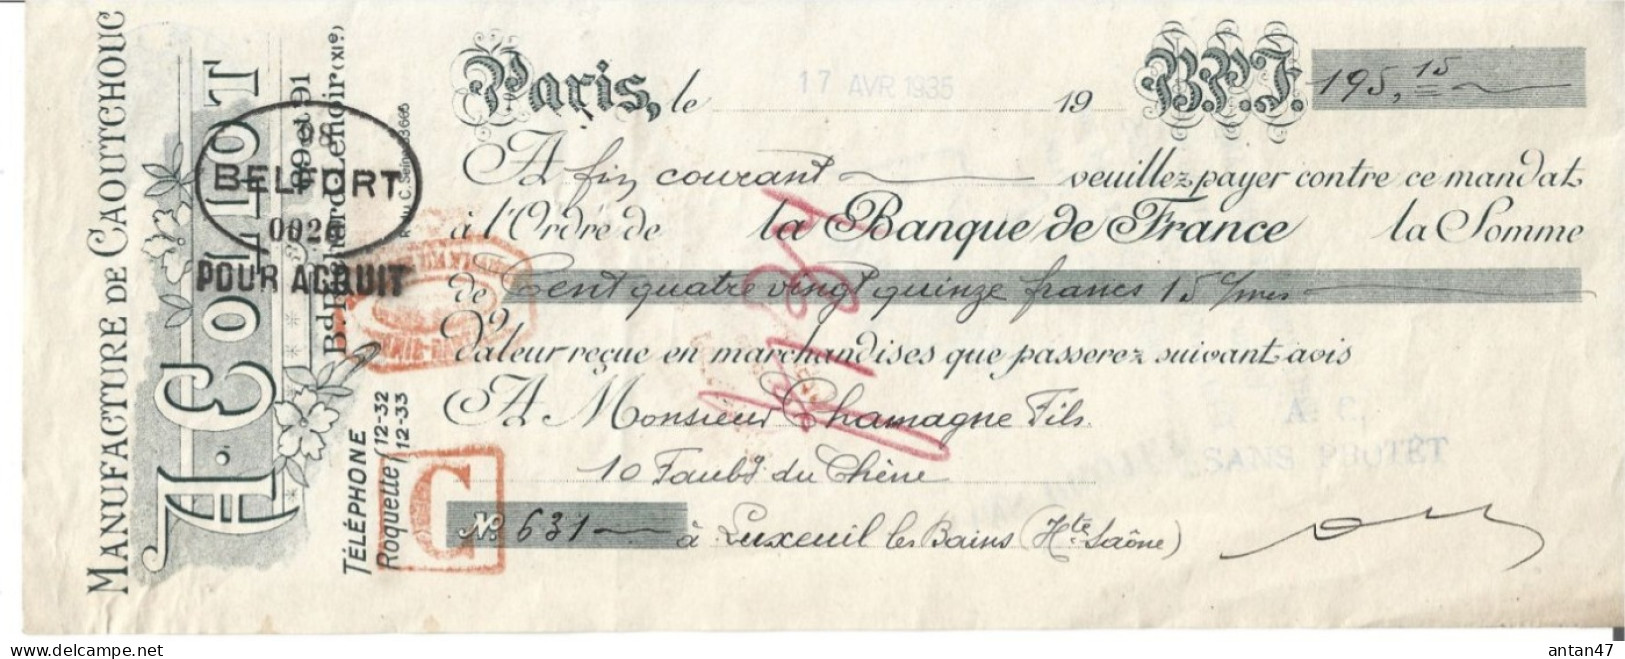 Traite Illustrée 1935 / 75011 PARIS / Manufacture De Caoutchouc COLLOT - Lettres De Change